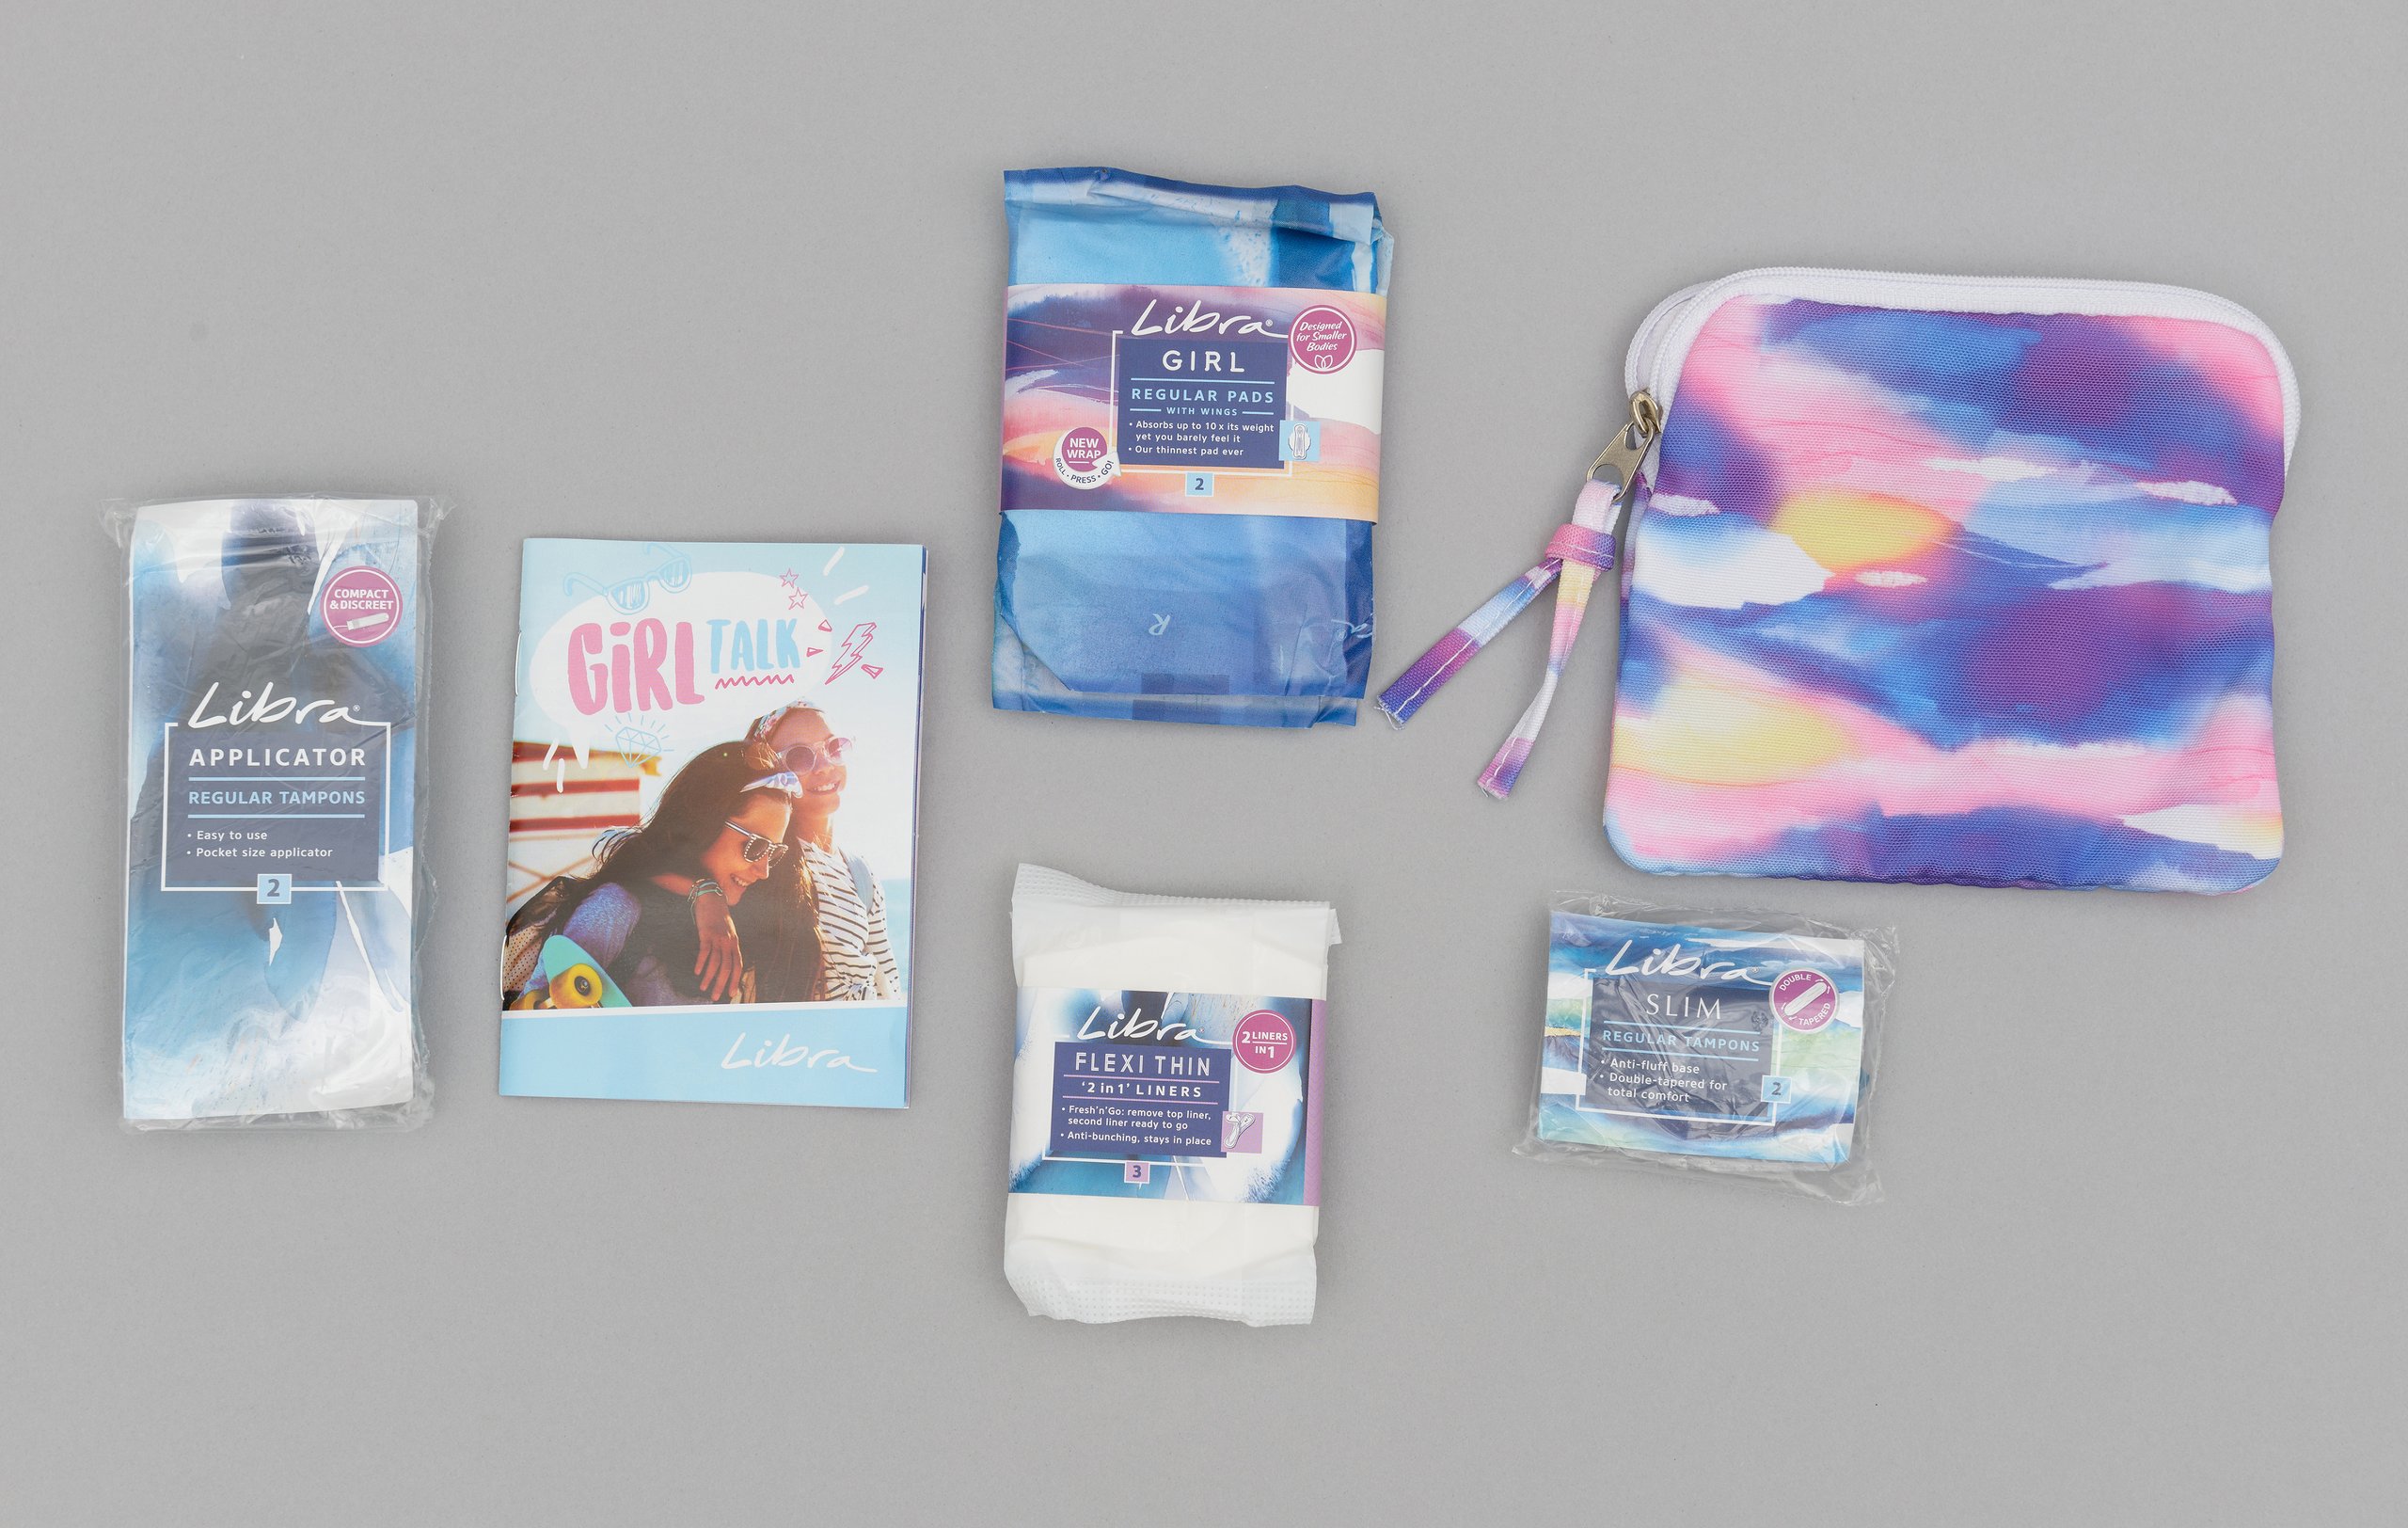 Libra Girl sample pack